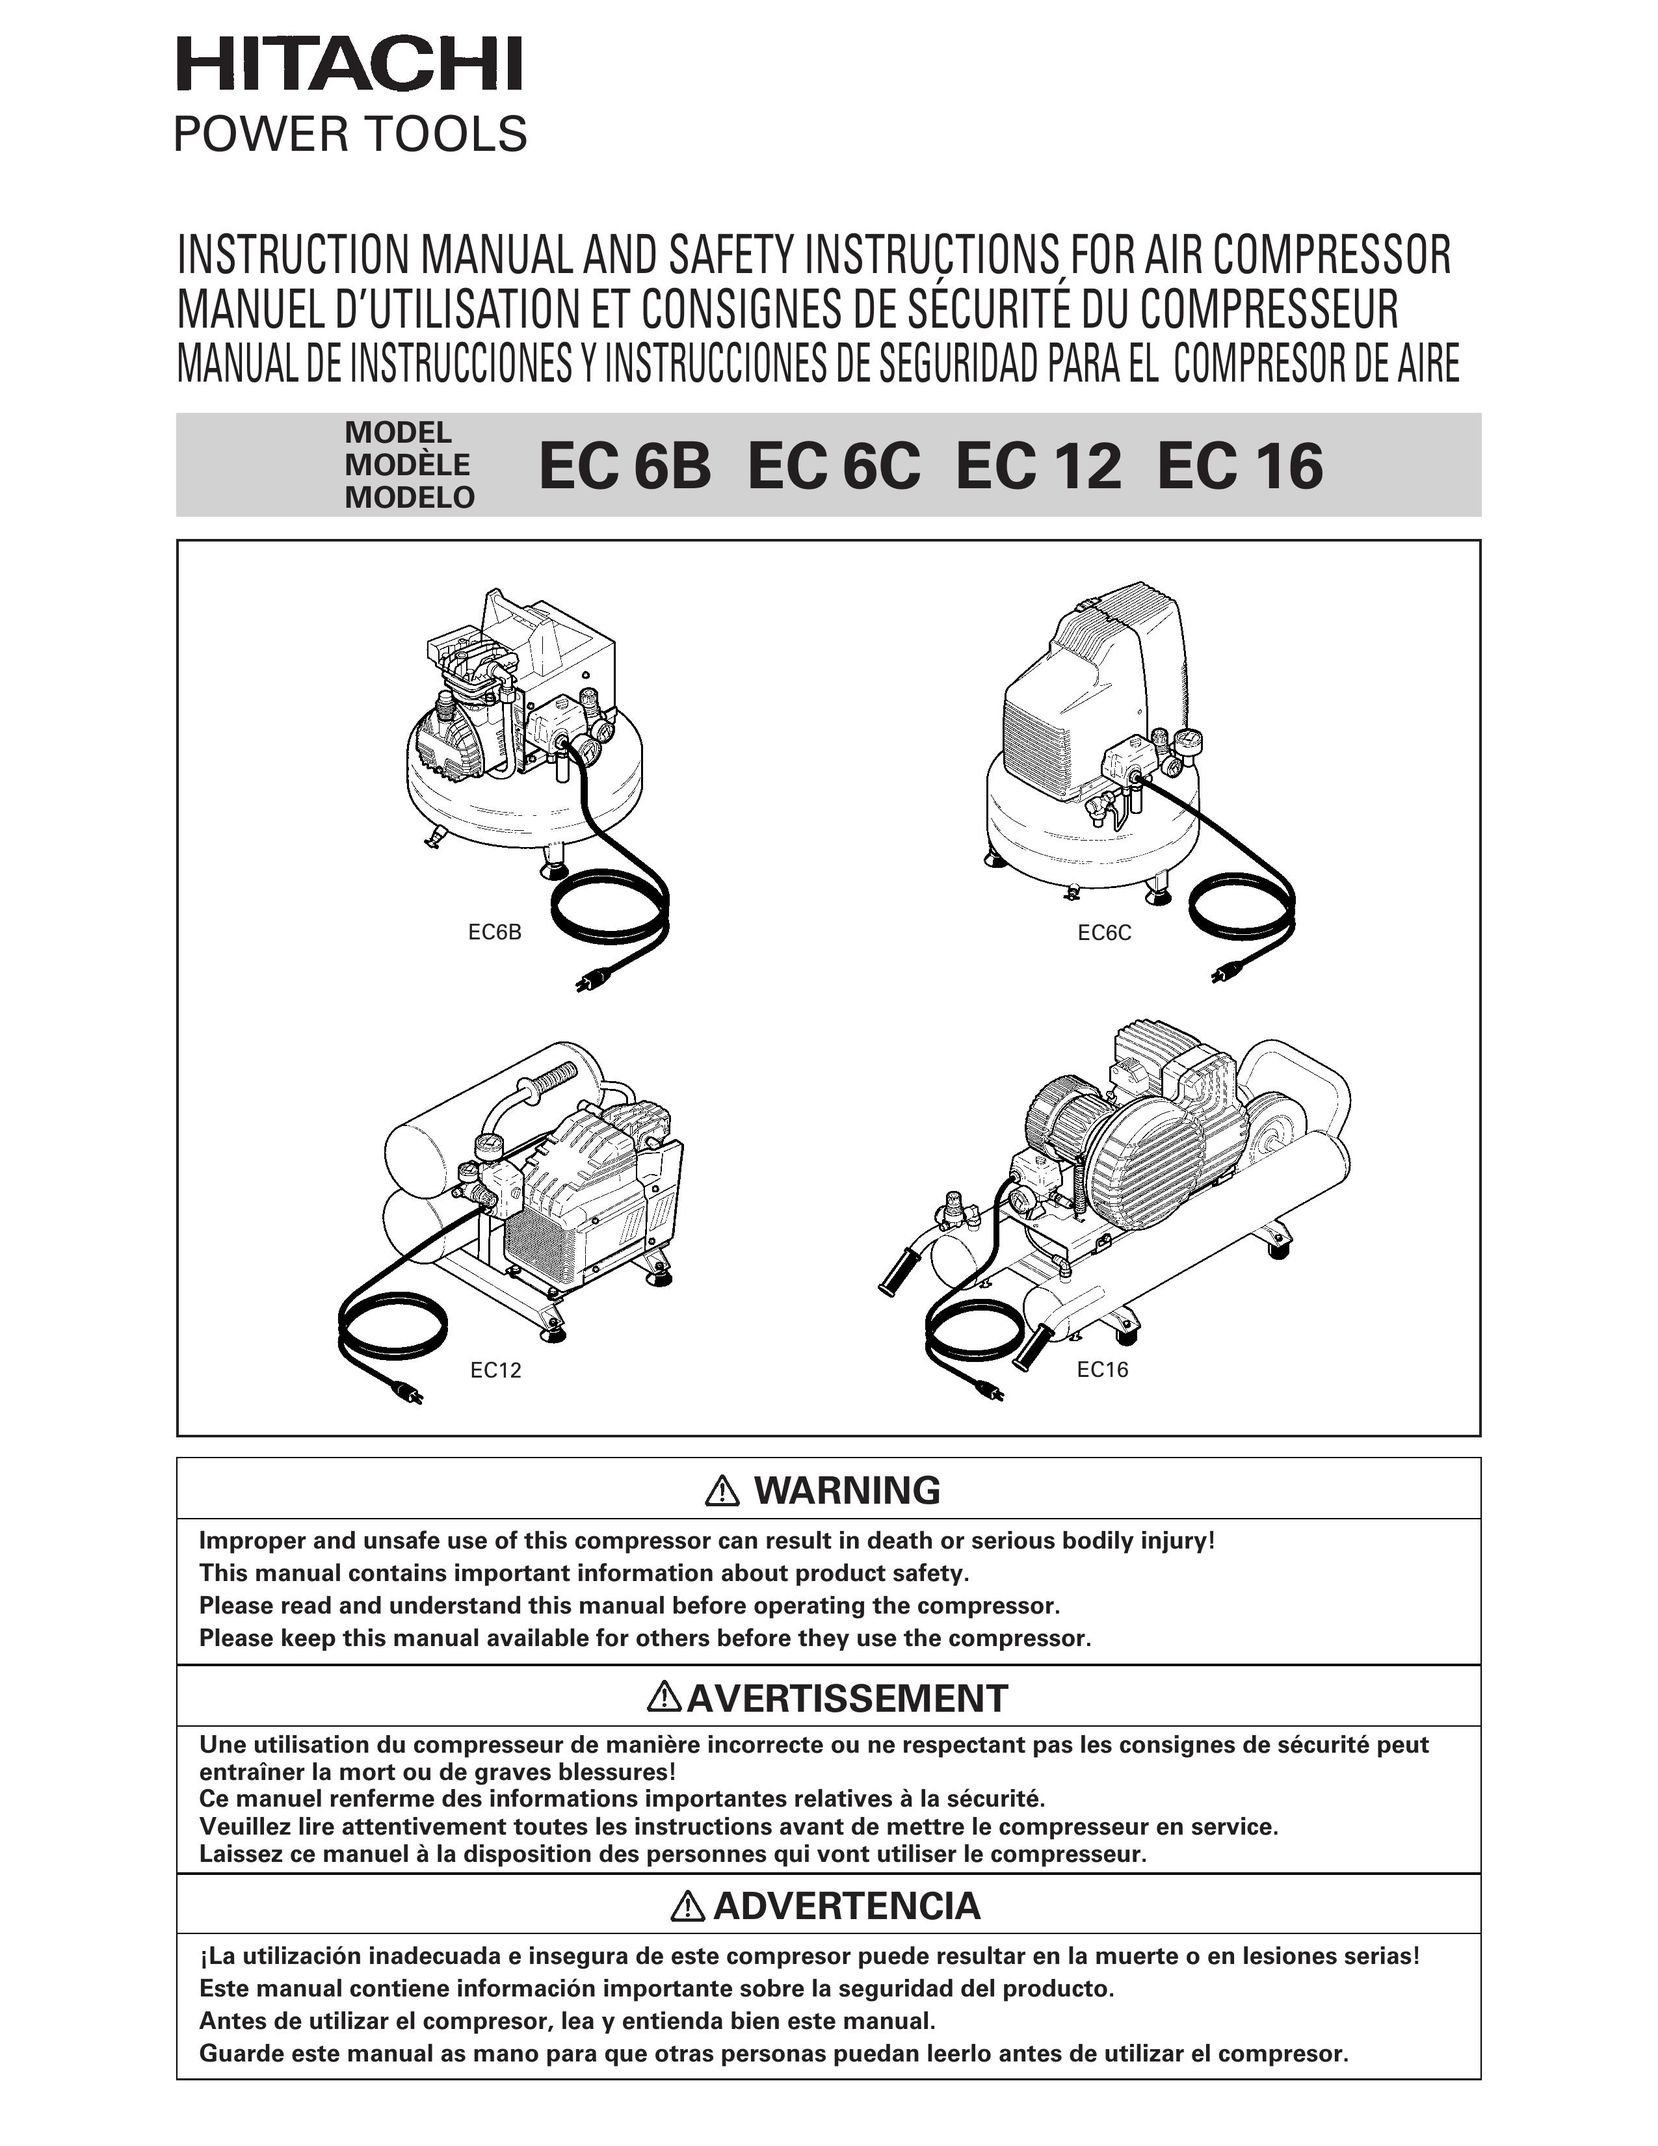 Hitachi EC 12 Air Compressor User Manual